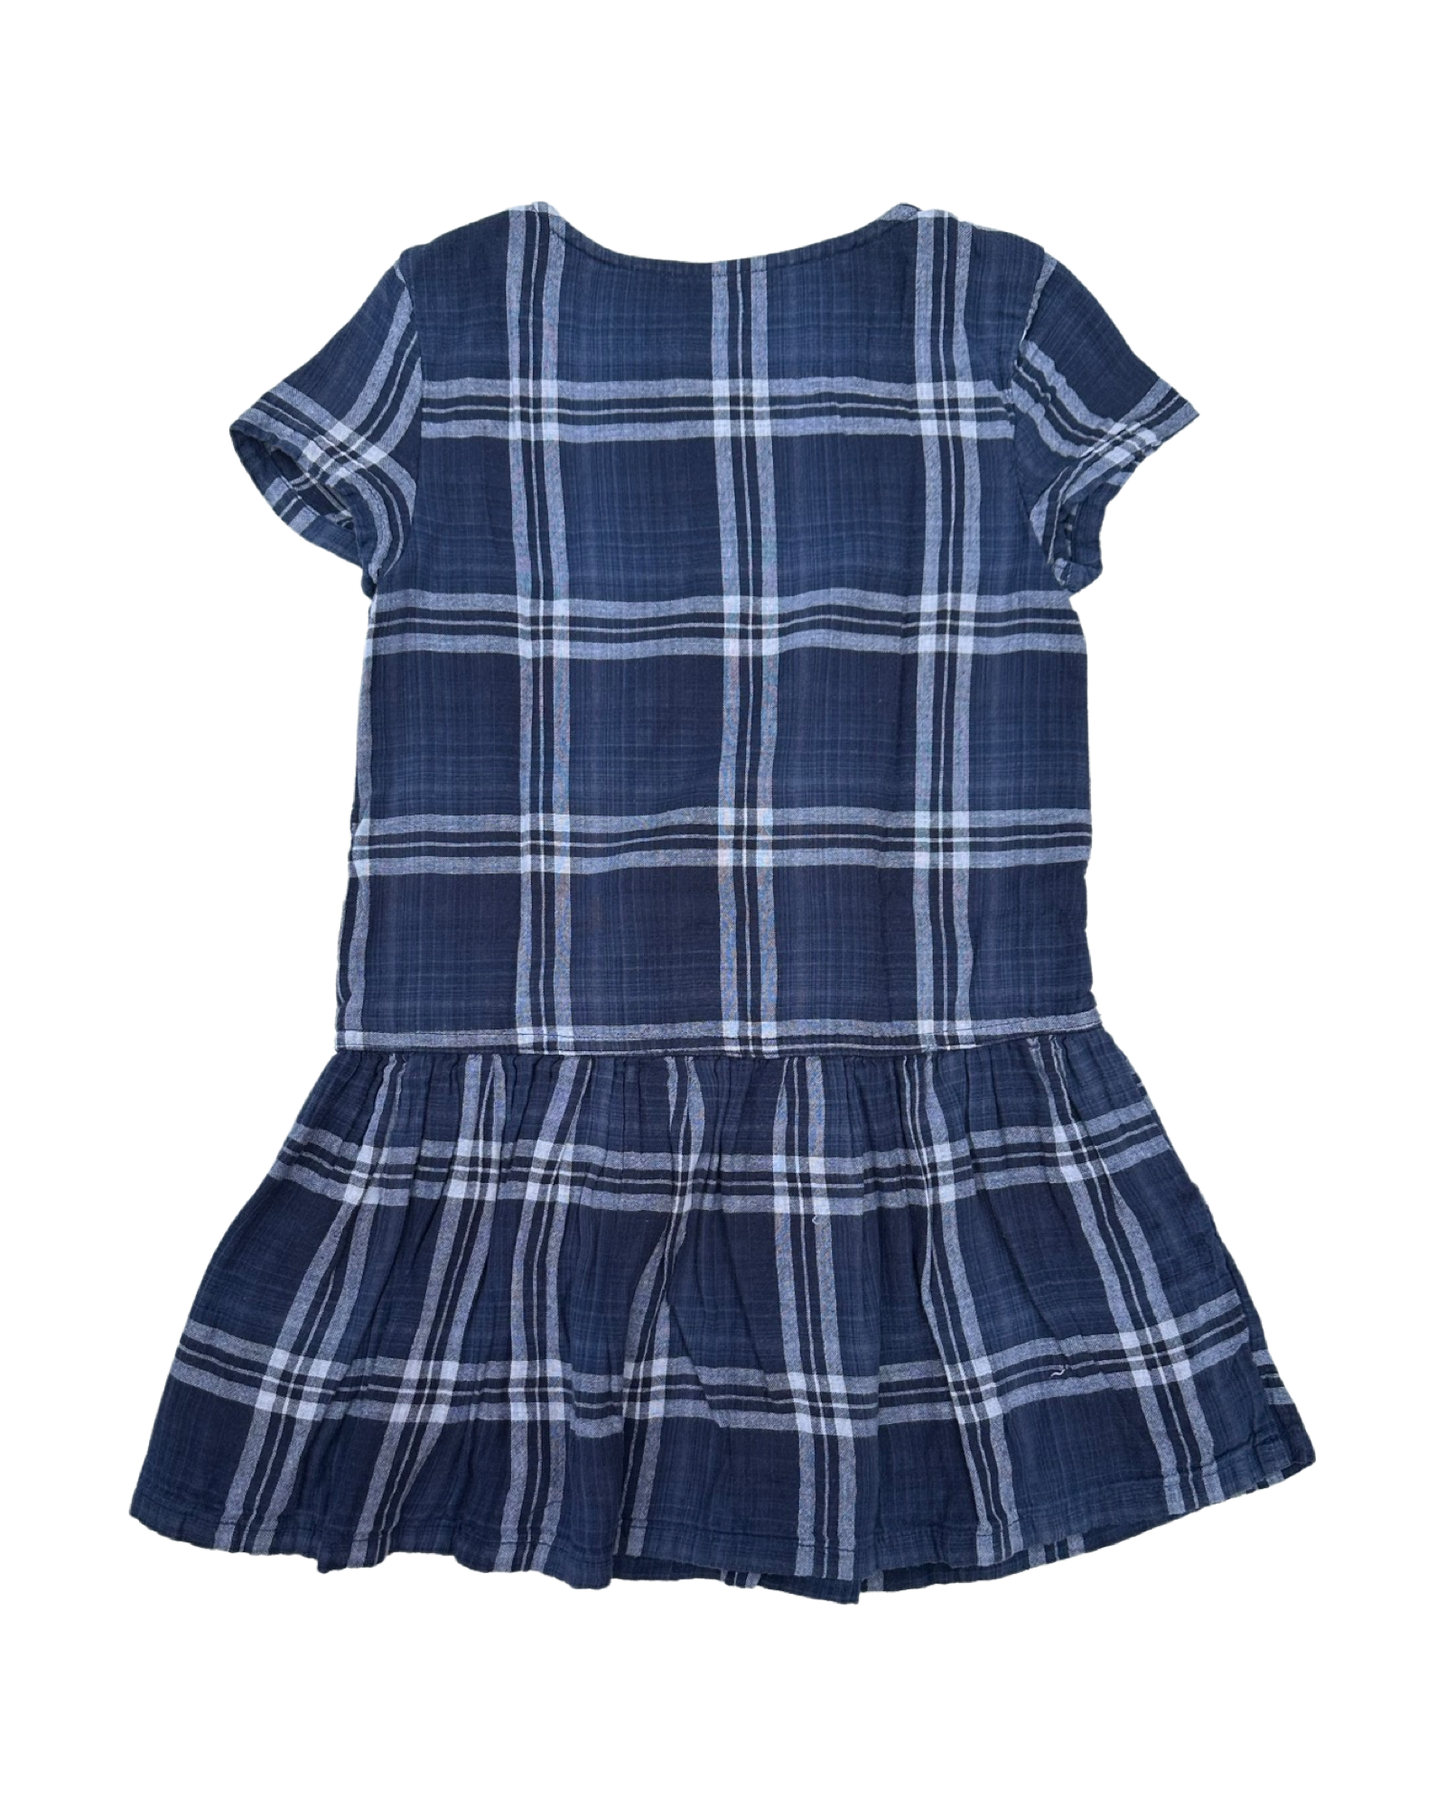 Gap kids checked cotton dress (size 6-7yrs)